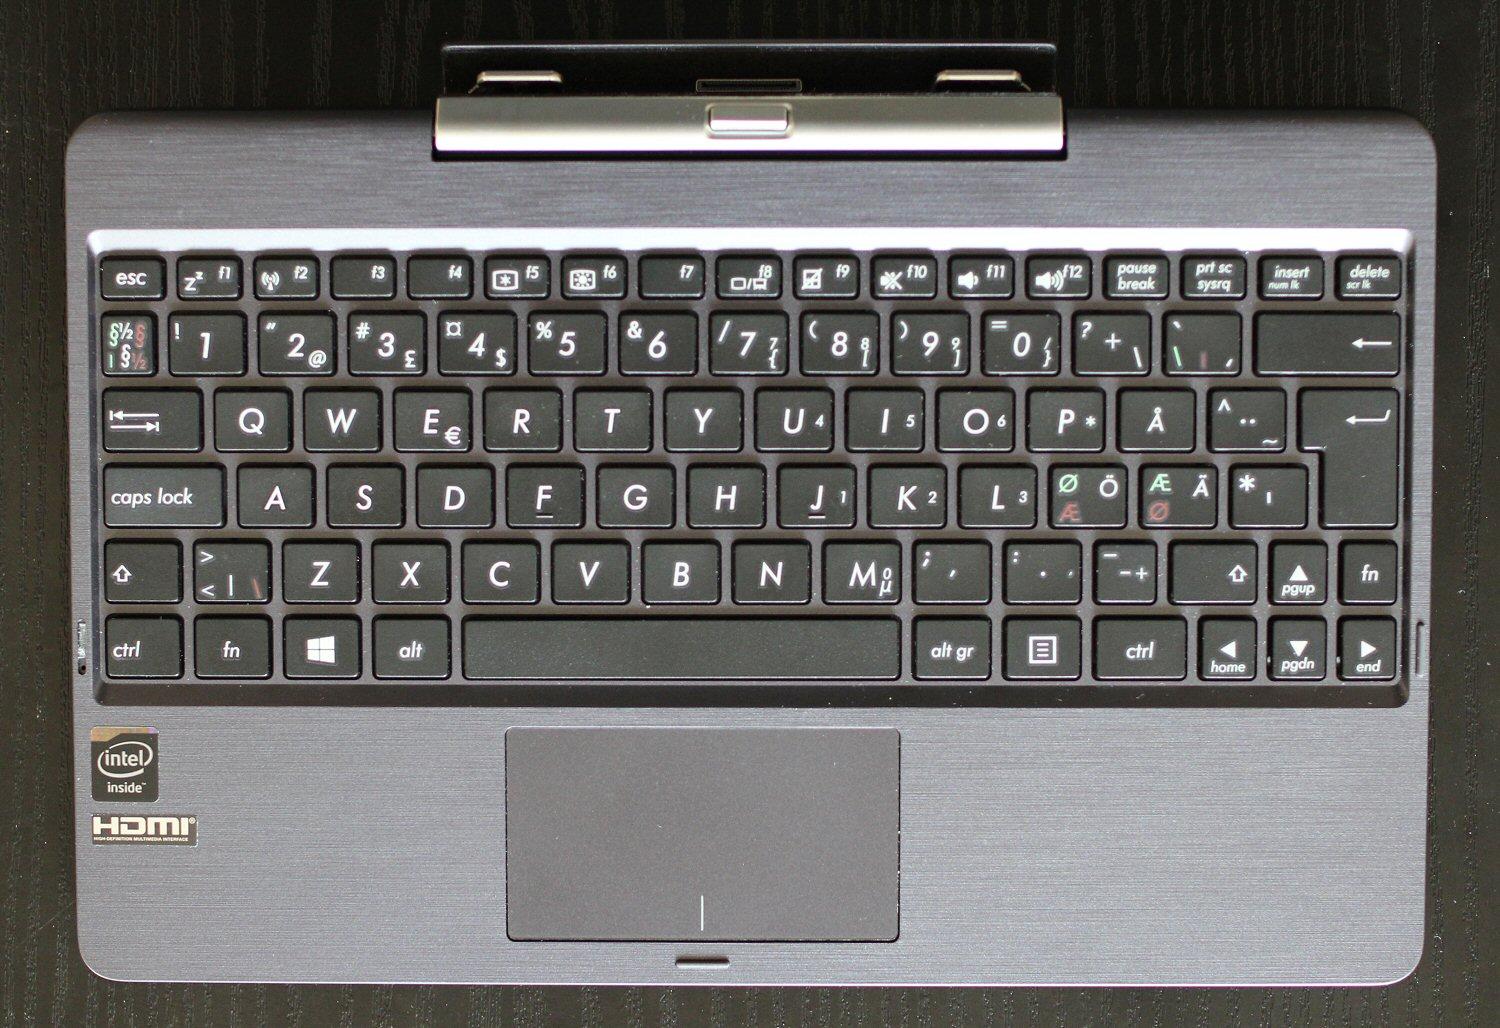 Tastaturet er litt smått, men likevel relativt godt.Foto: Vegar Jansen, Hardware.no